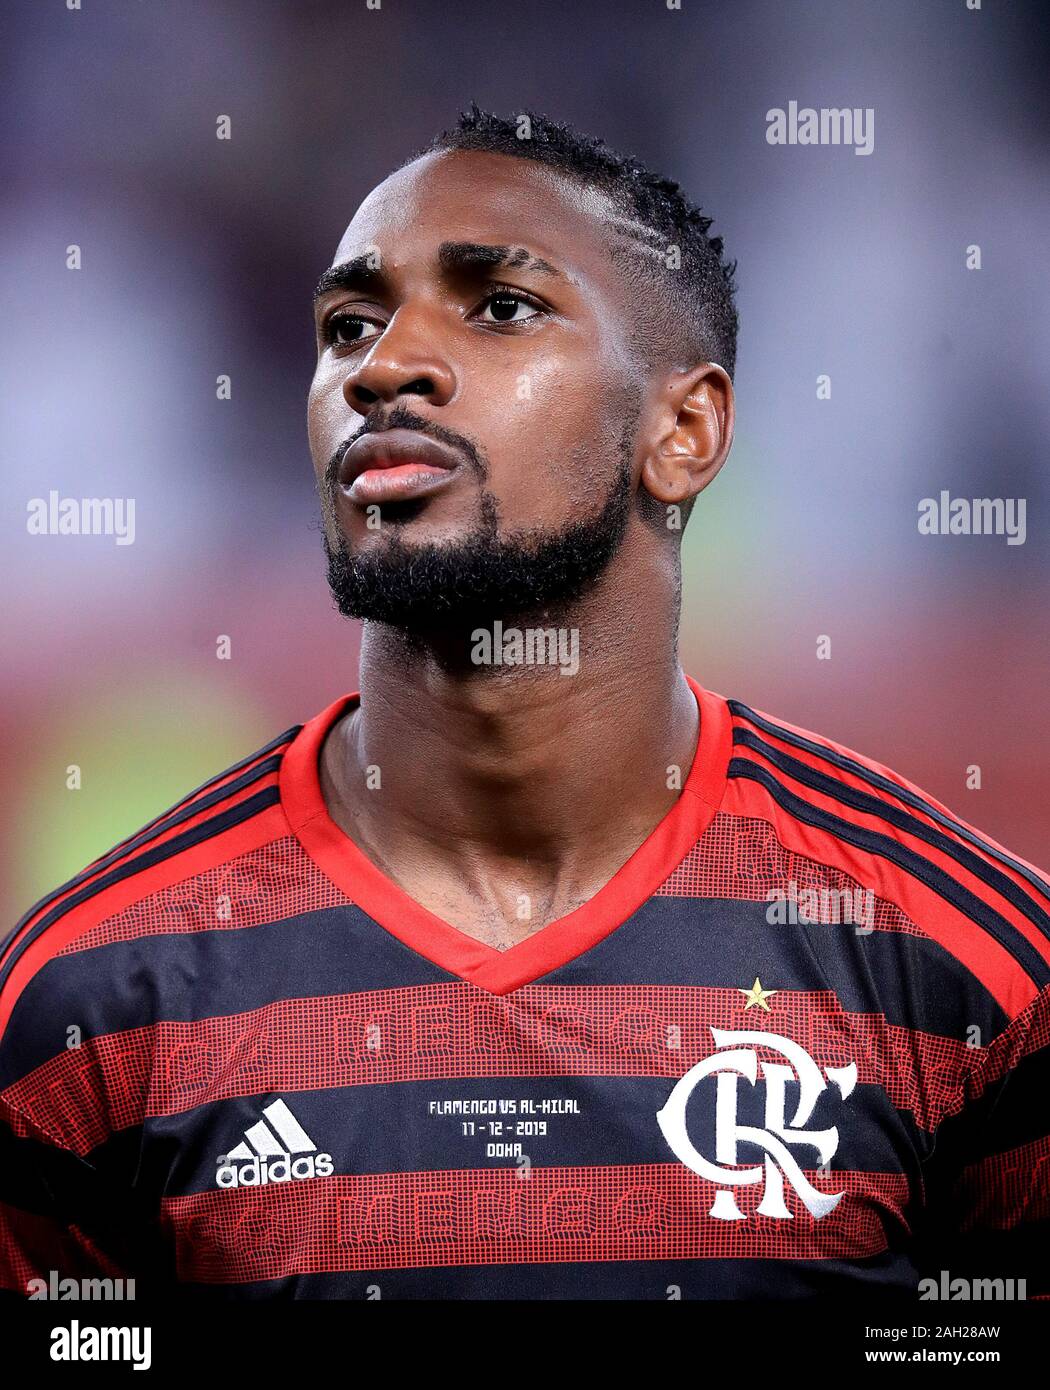 da Silva Gerson, Flamengo Stock Photo